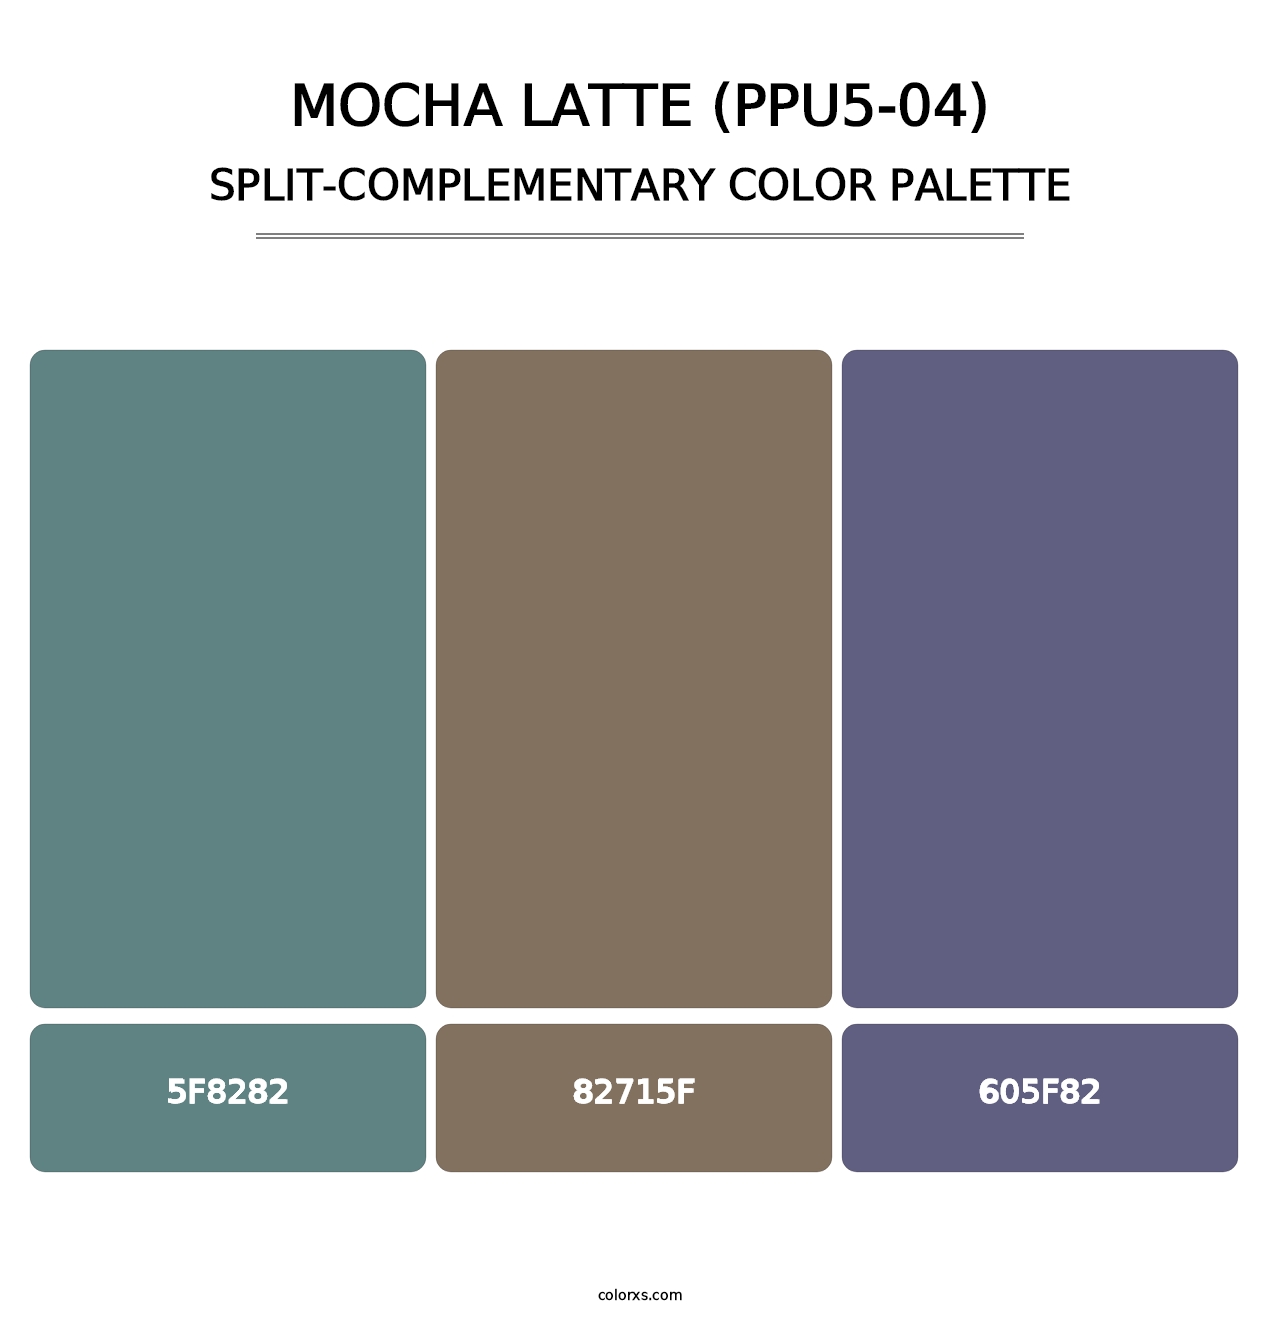 Mocha Latte (PPU5-04) - Split-Complementary Color Palette